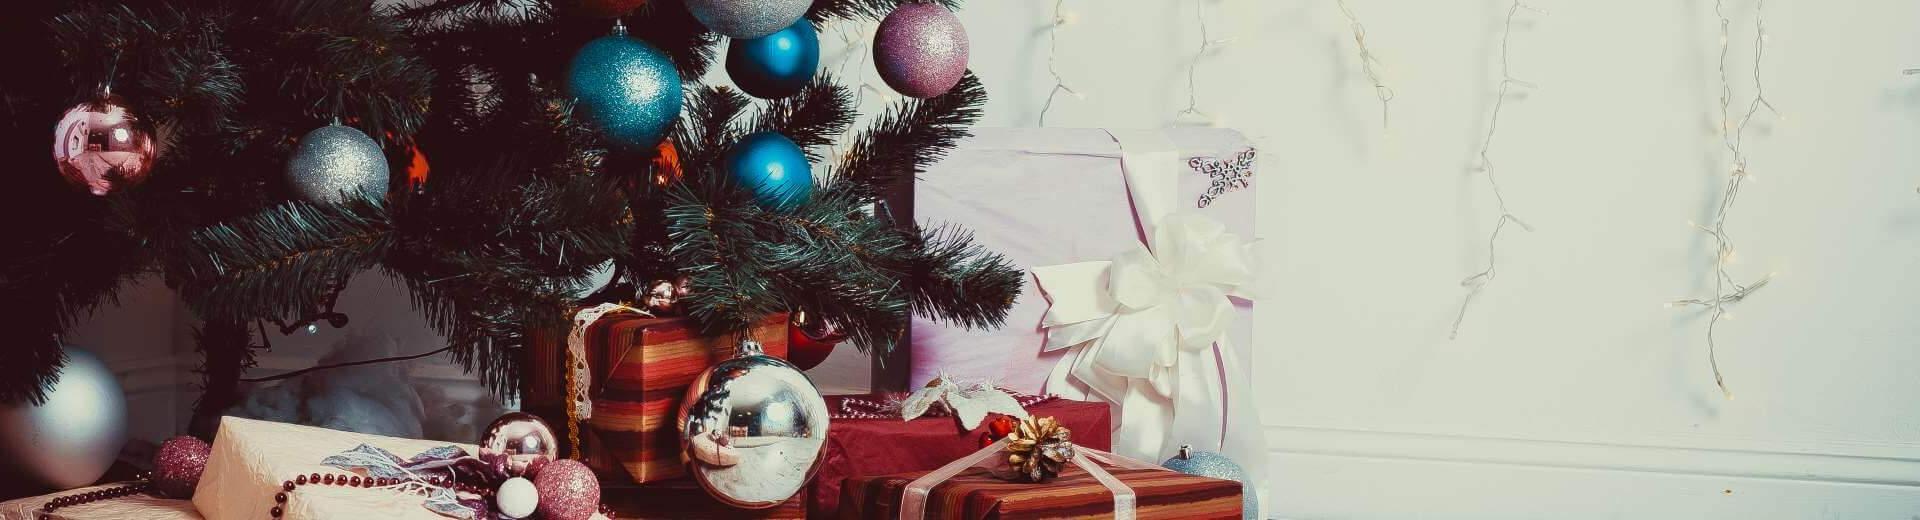 Weihnachten im Ferienhaus in Finnland | Casamundo - Casamundo